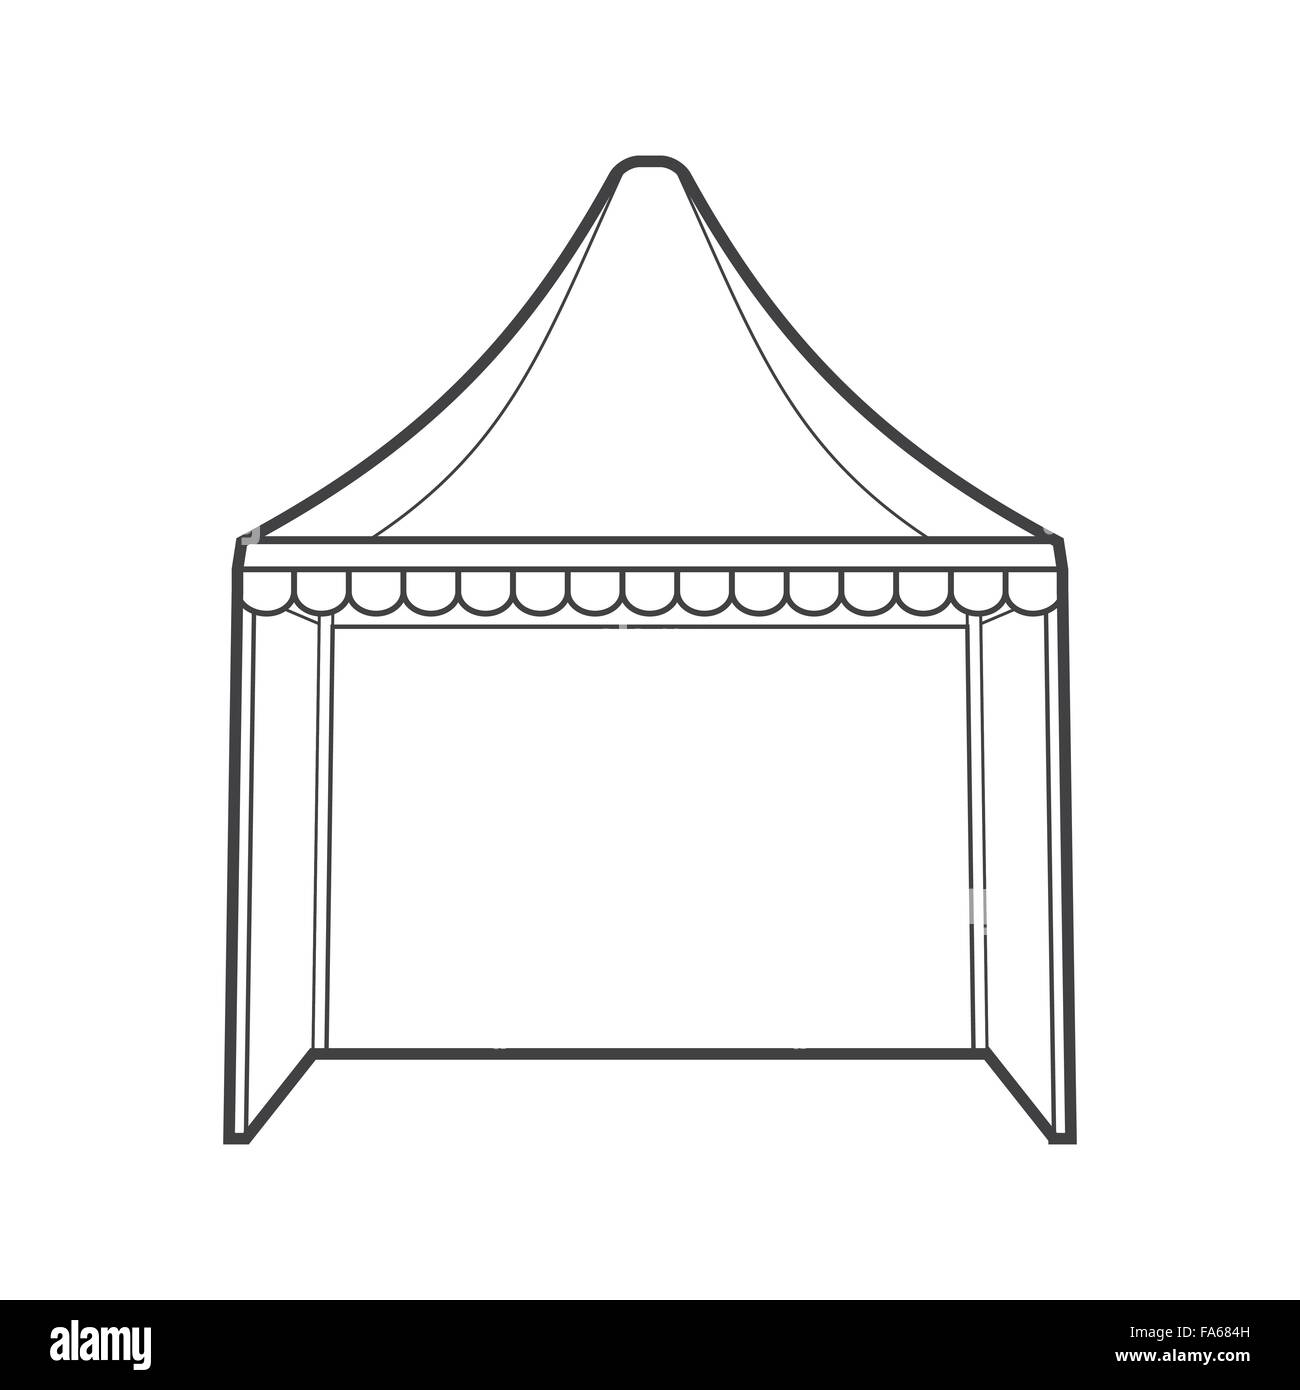 Vektor monochrome Kontur Kuppel Faltung Event Zelt Festzelt isoliert schwarzen Umriss Abbildung auf weißem Hintergrund Stock Vektor